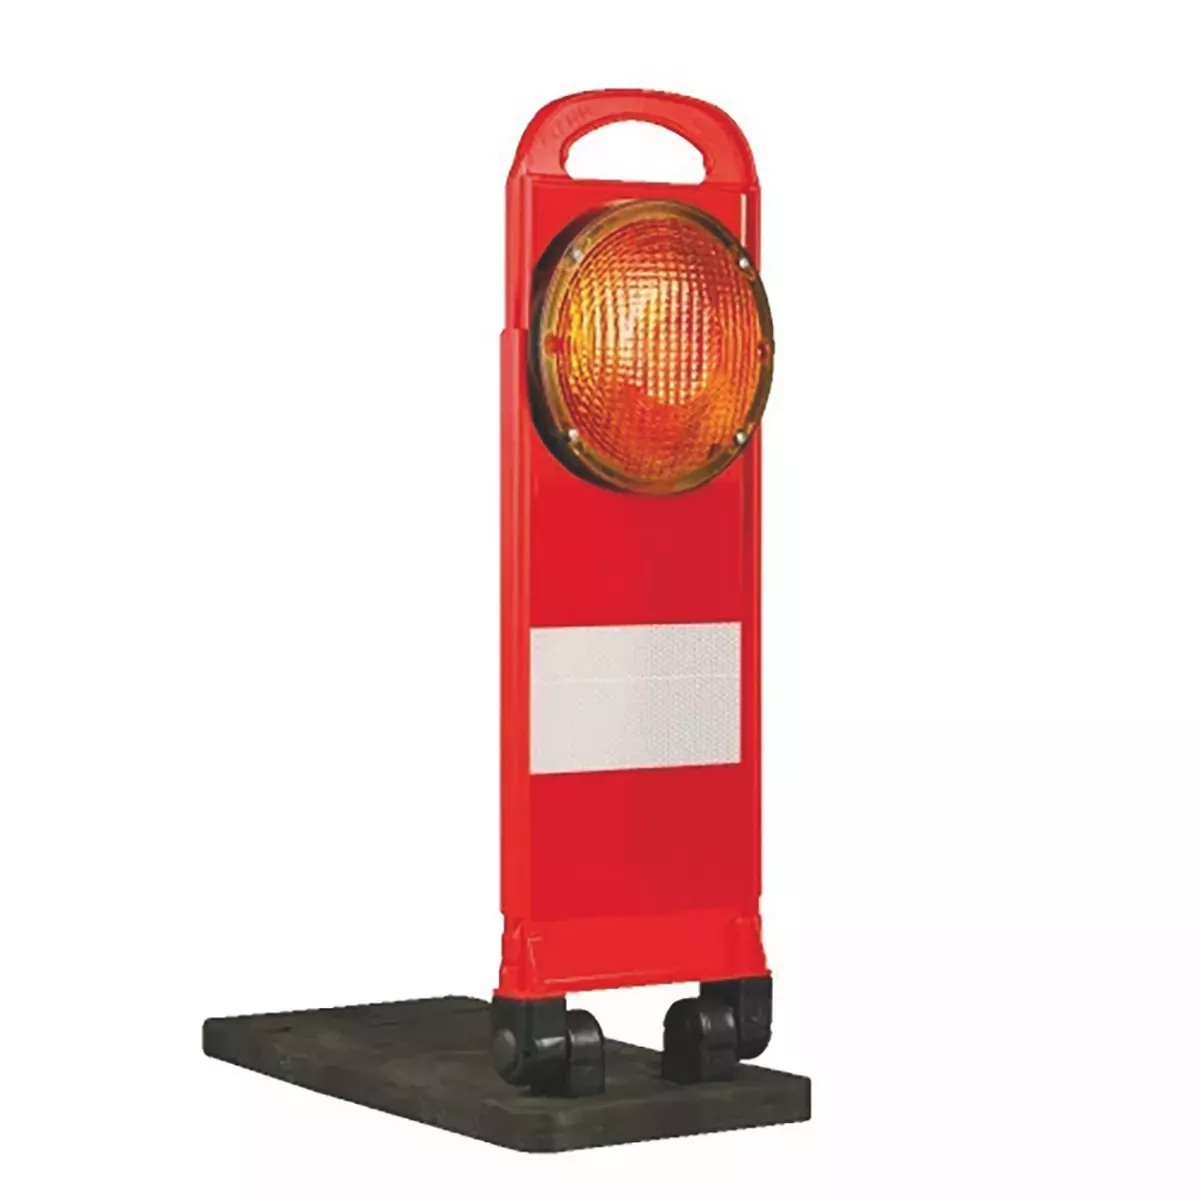 FlashMax Klappbake, rot, 710mm, mit gelber LED-Blitzleuchte, Synchronisierbar, Folie rot/weiß RA2